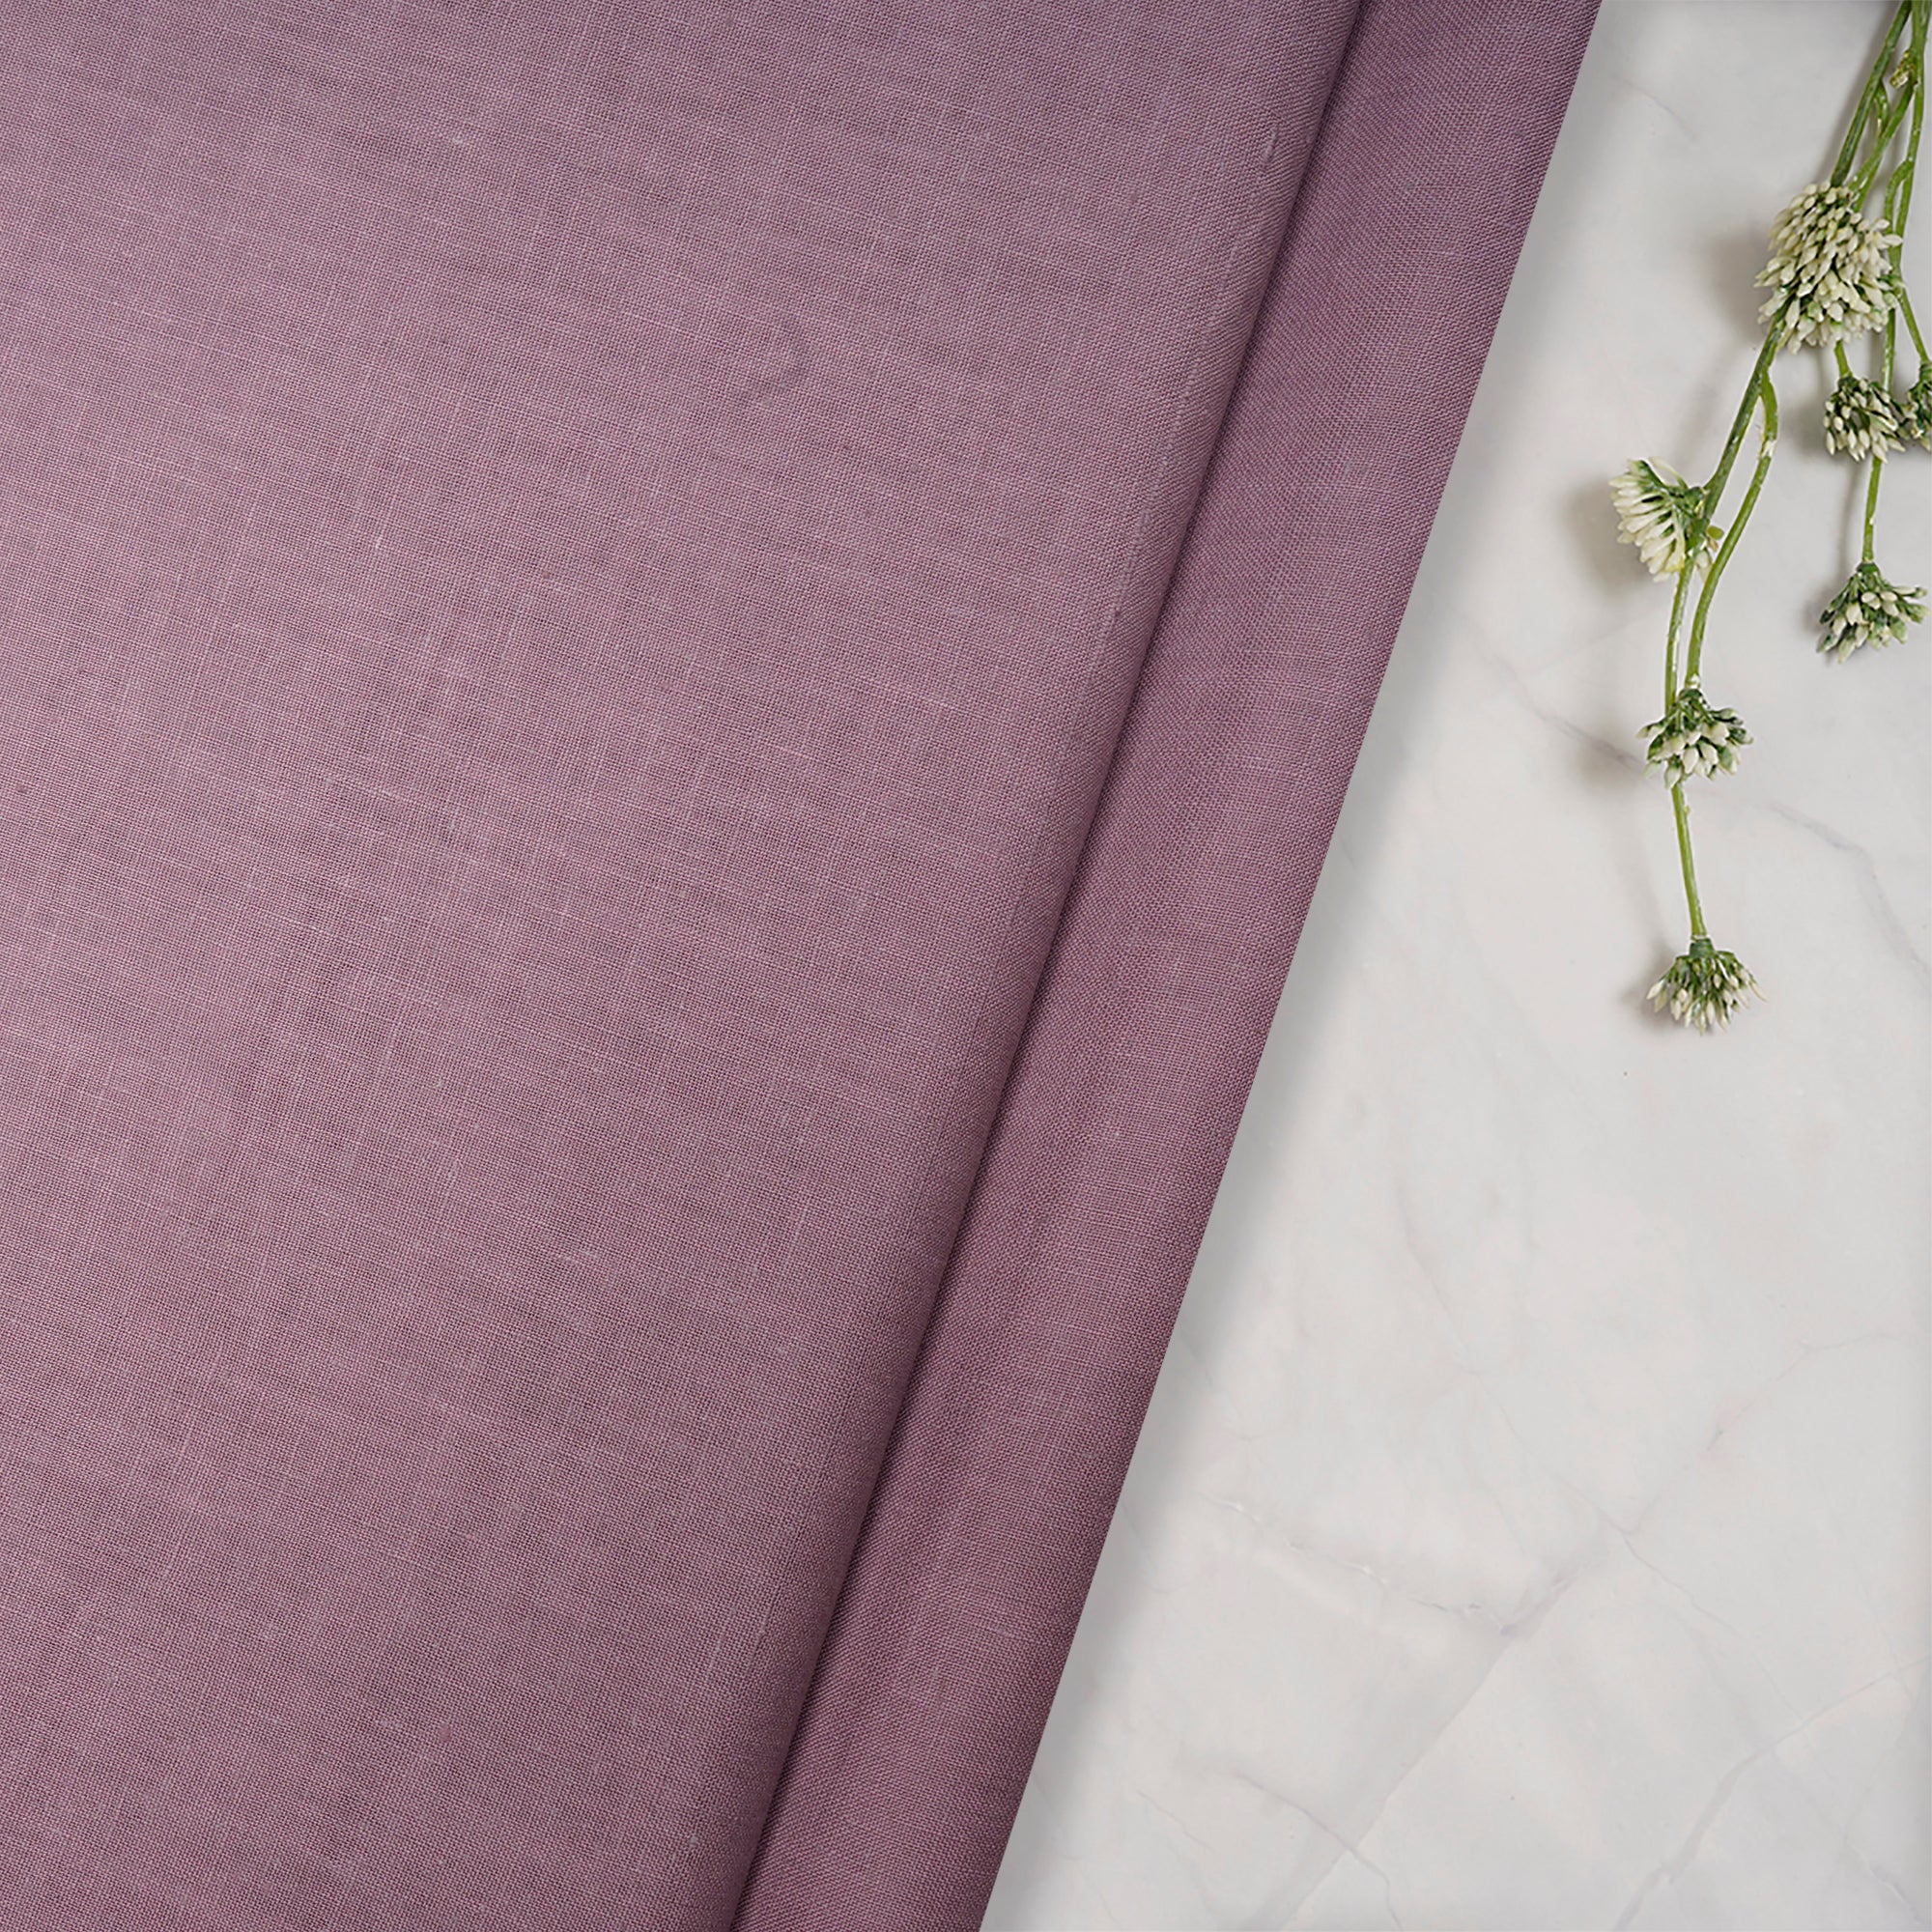 Dusty Lavender Color Handwoven Handspun Cotton Fabric